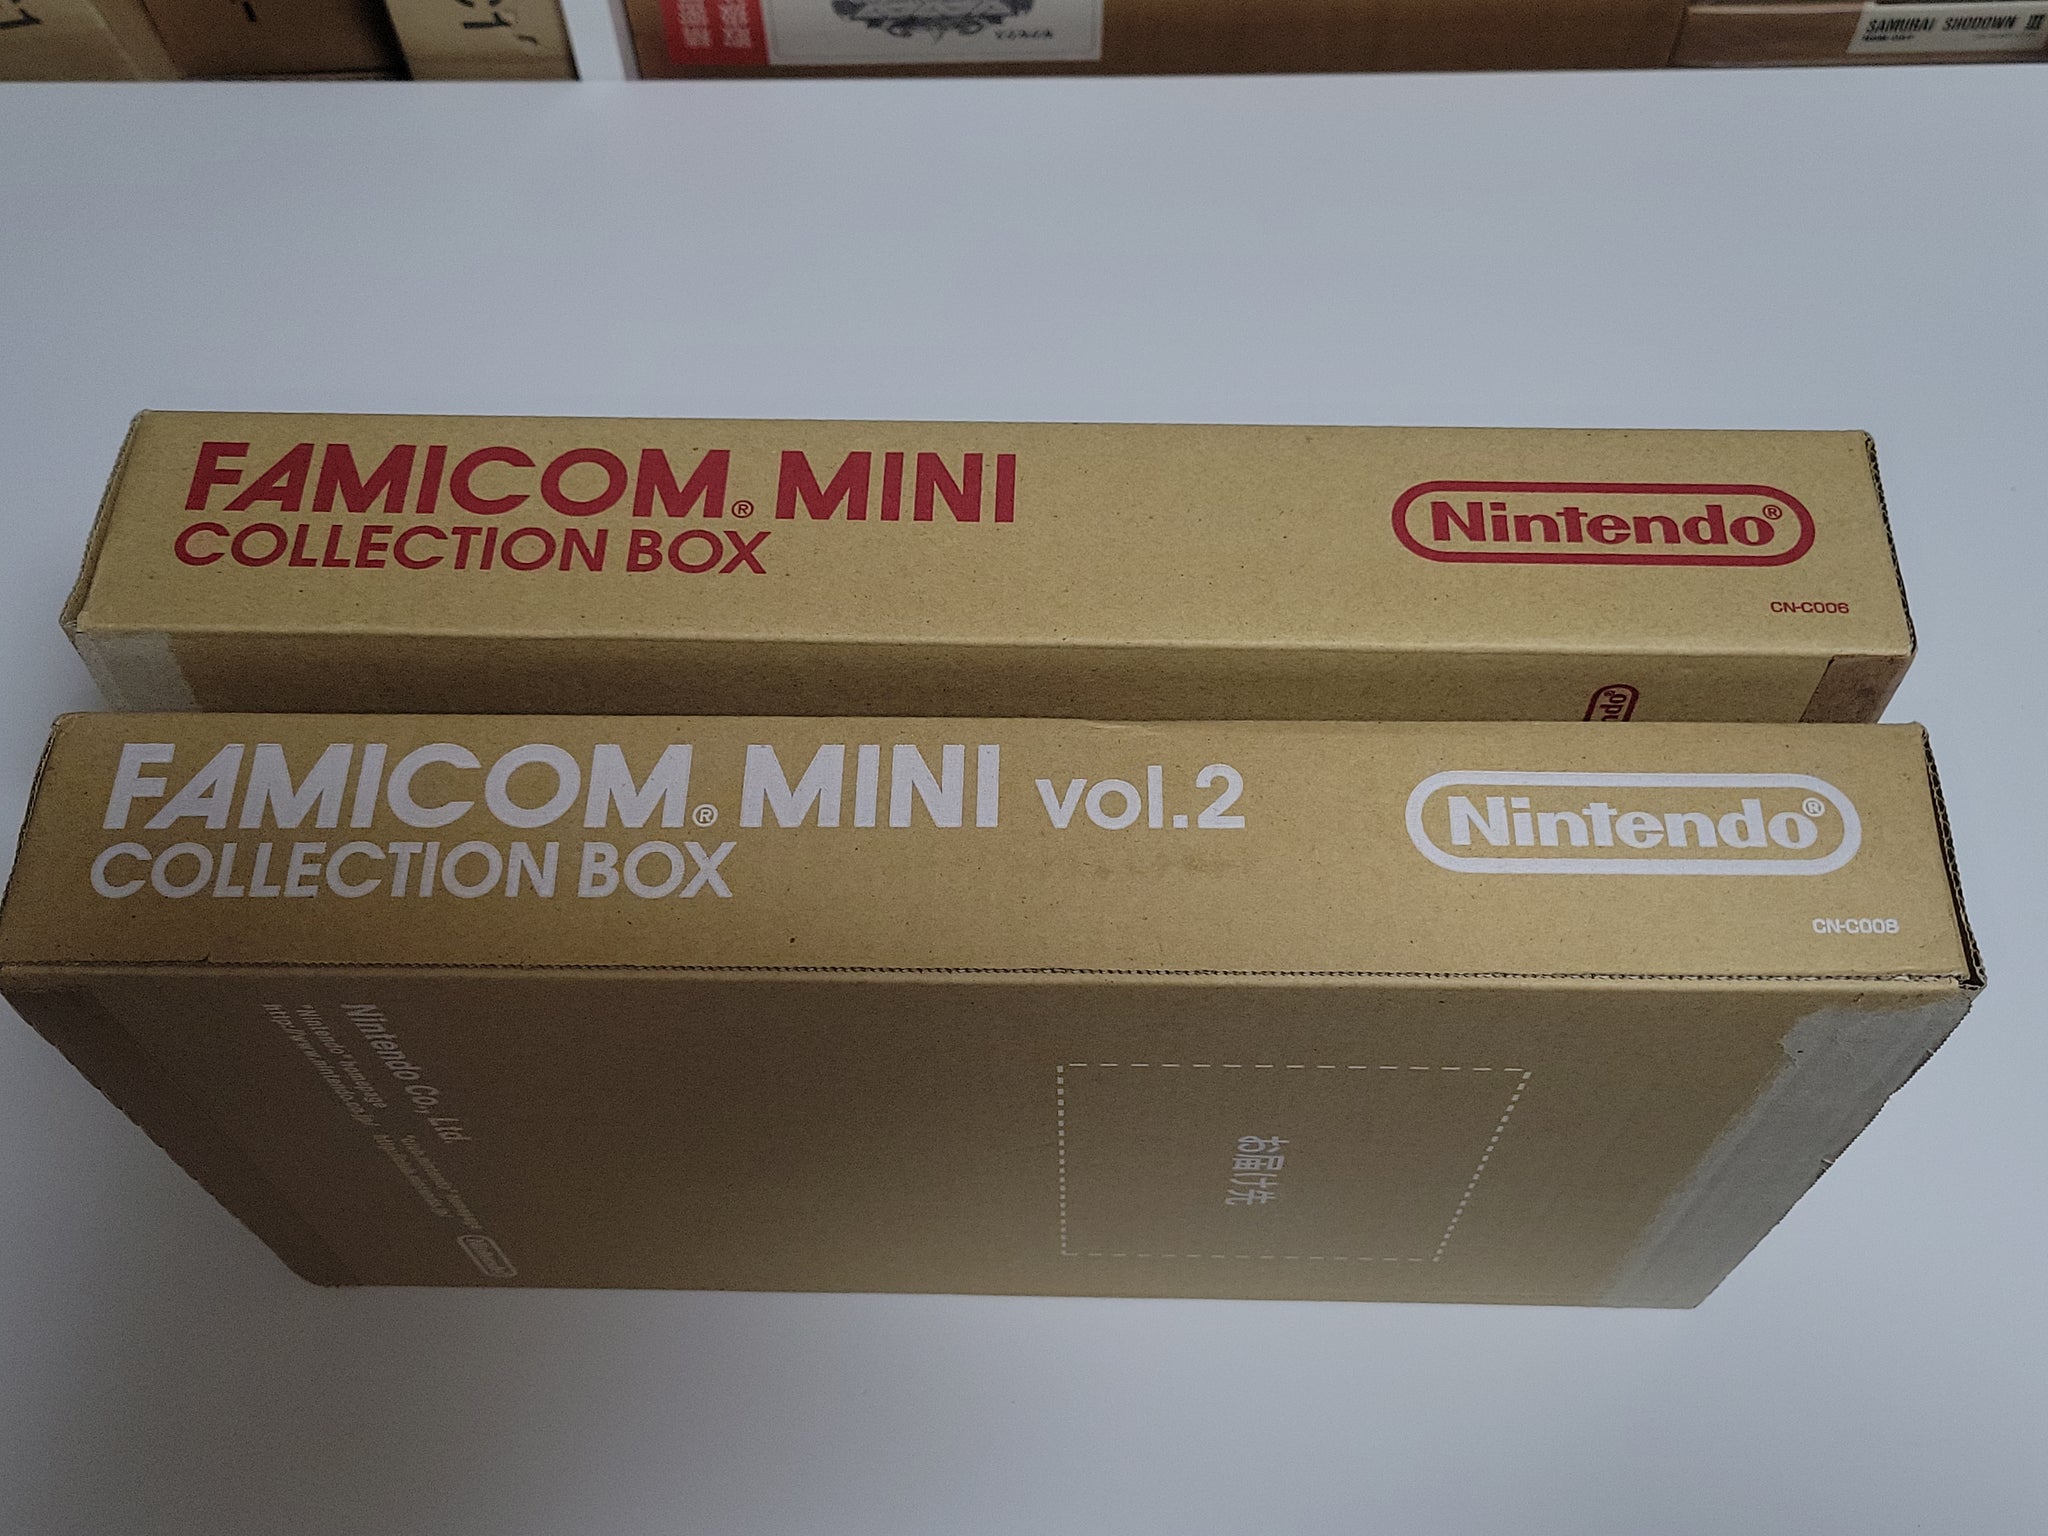 Famicom Mini Series Vol.01: Super Mario Bros. - Nintendo GBA GameBoy A –  The Emporium RetroGames and Toys